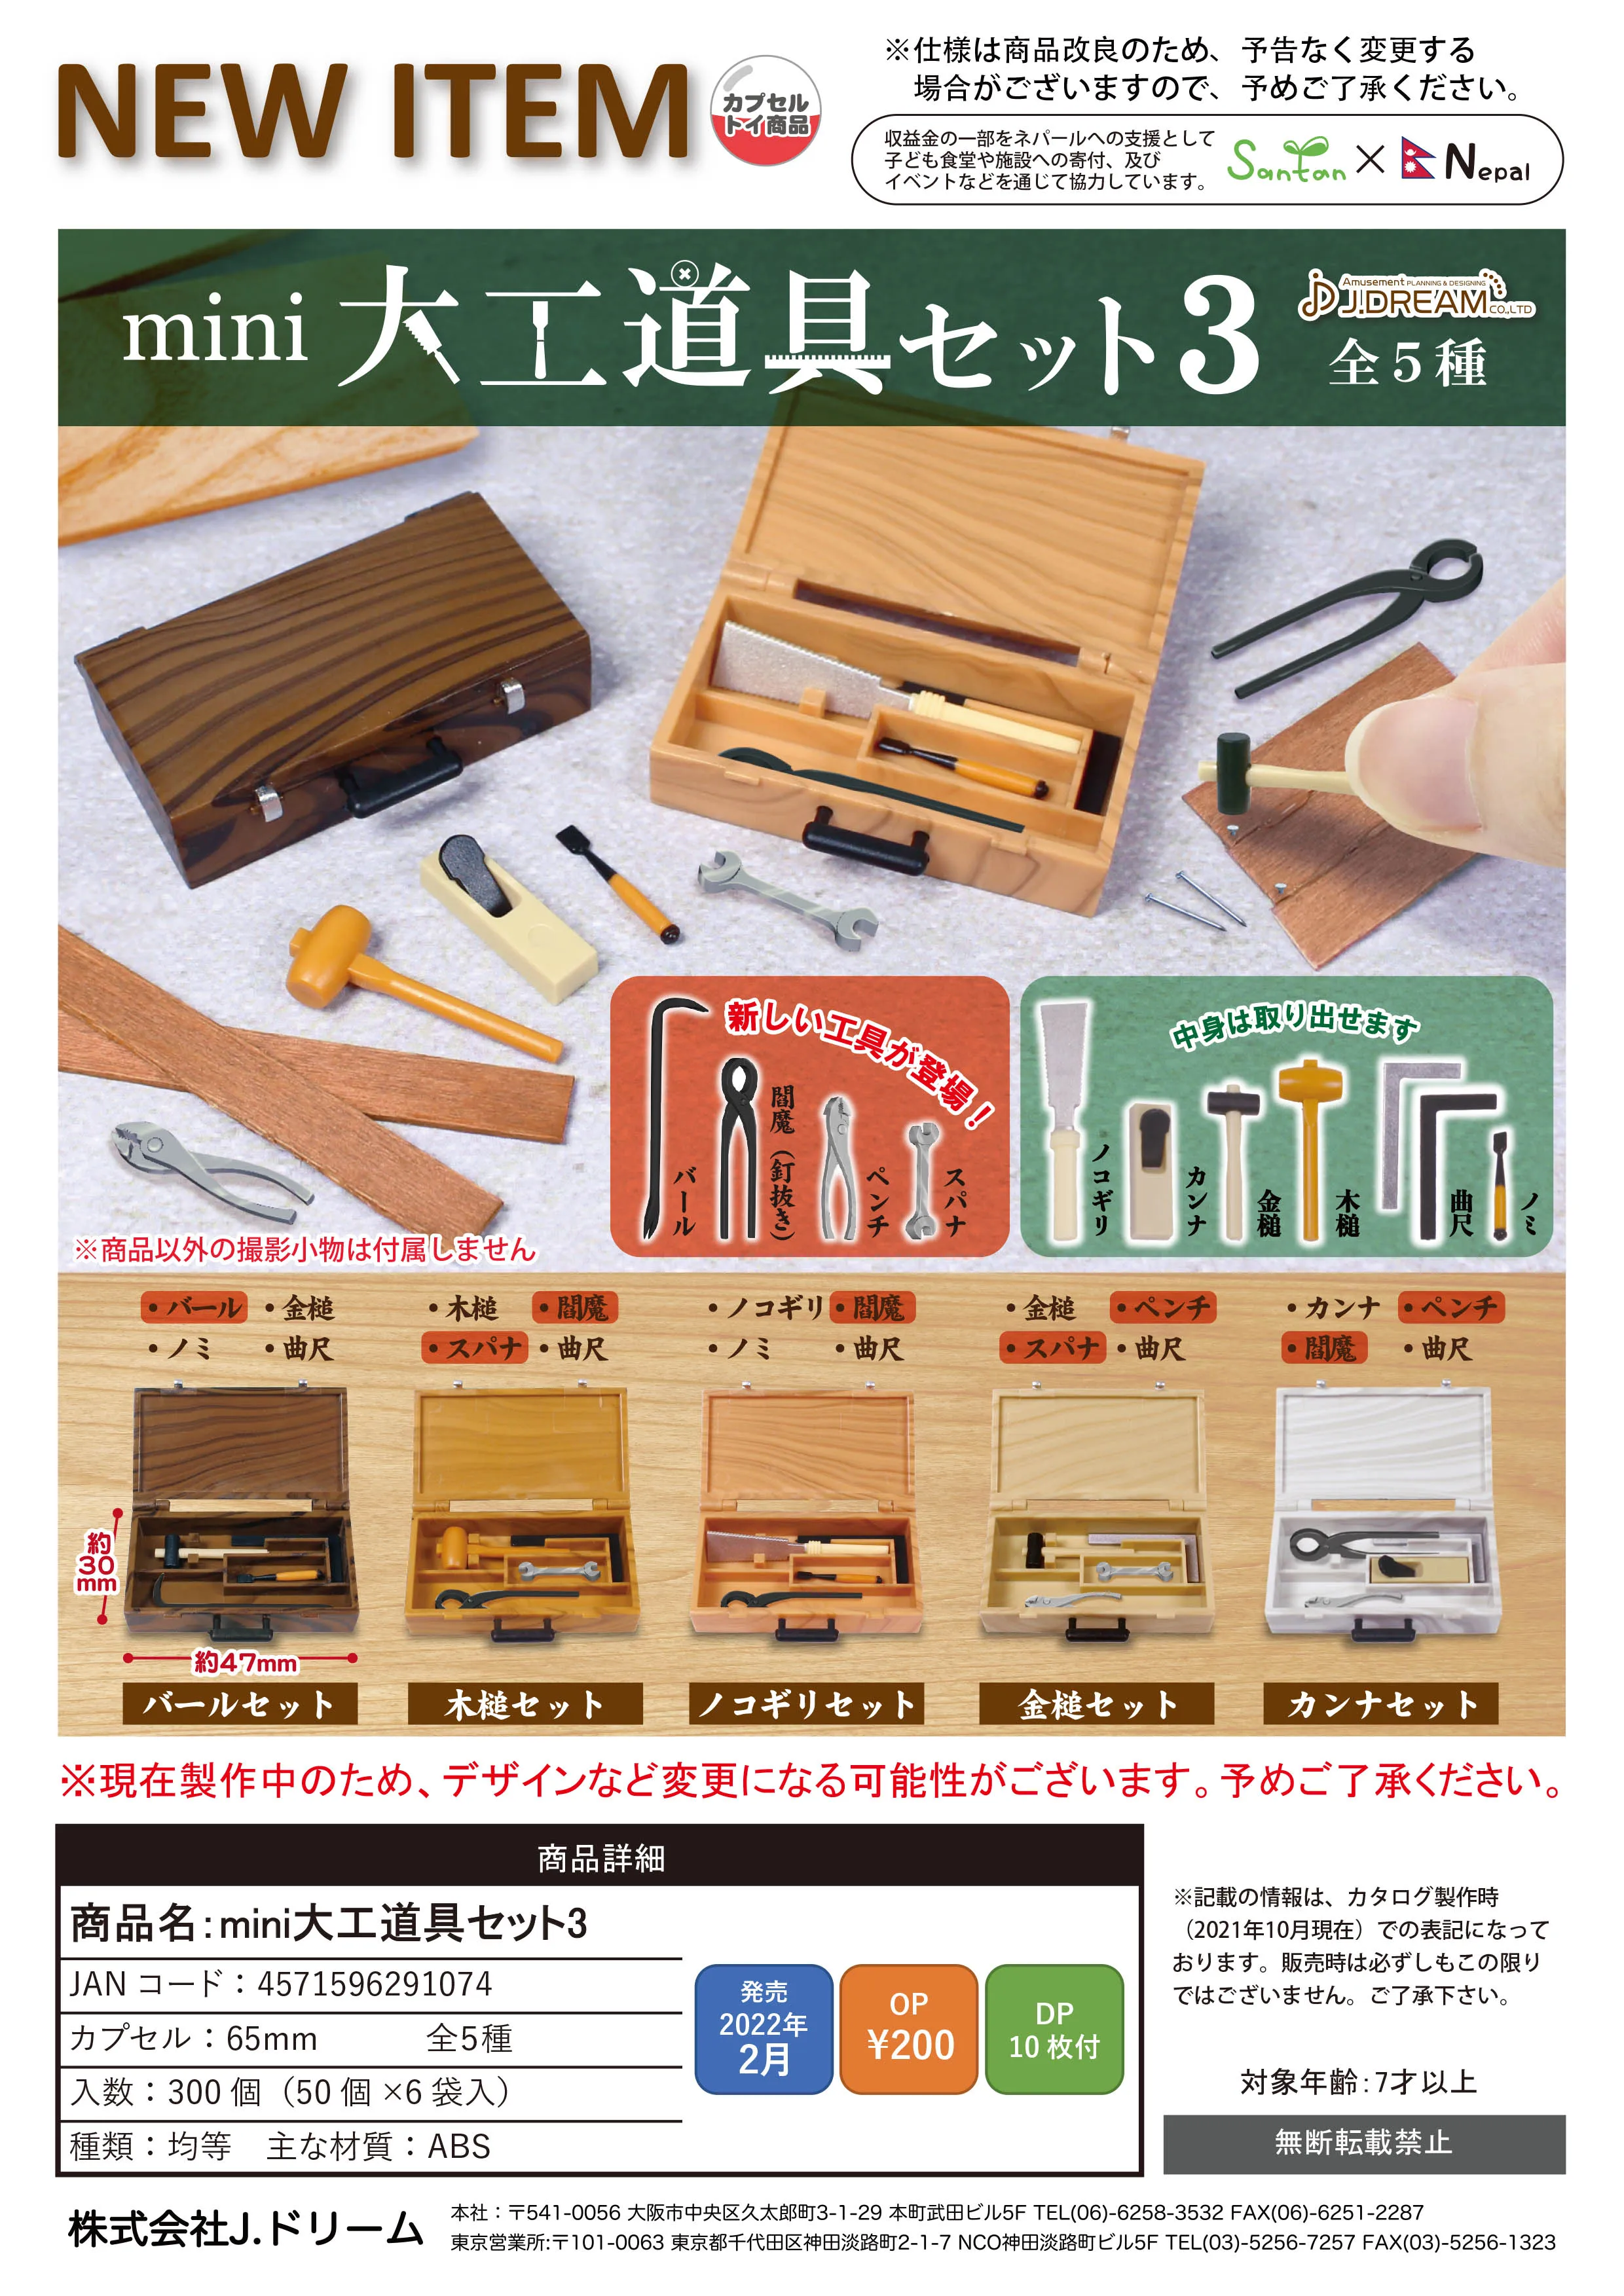 Купи Japan J-dream Gashapon Capsule Toy Great Worker Props 3 Mini Blind Box Decoration Wood Carving Tool за 307 рублей в магазине AliExpress